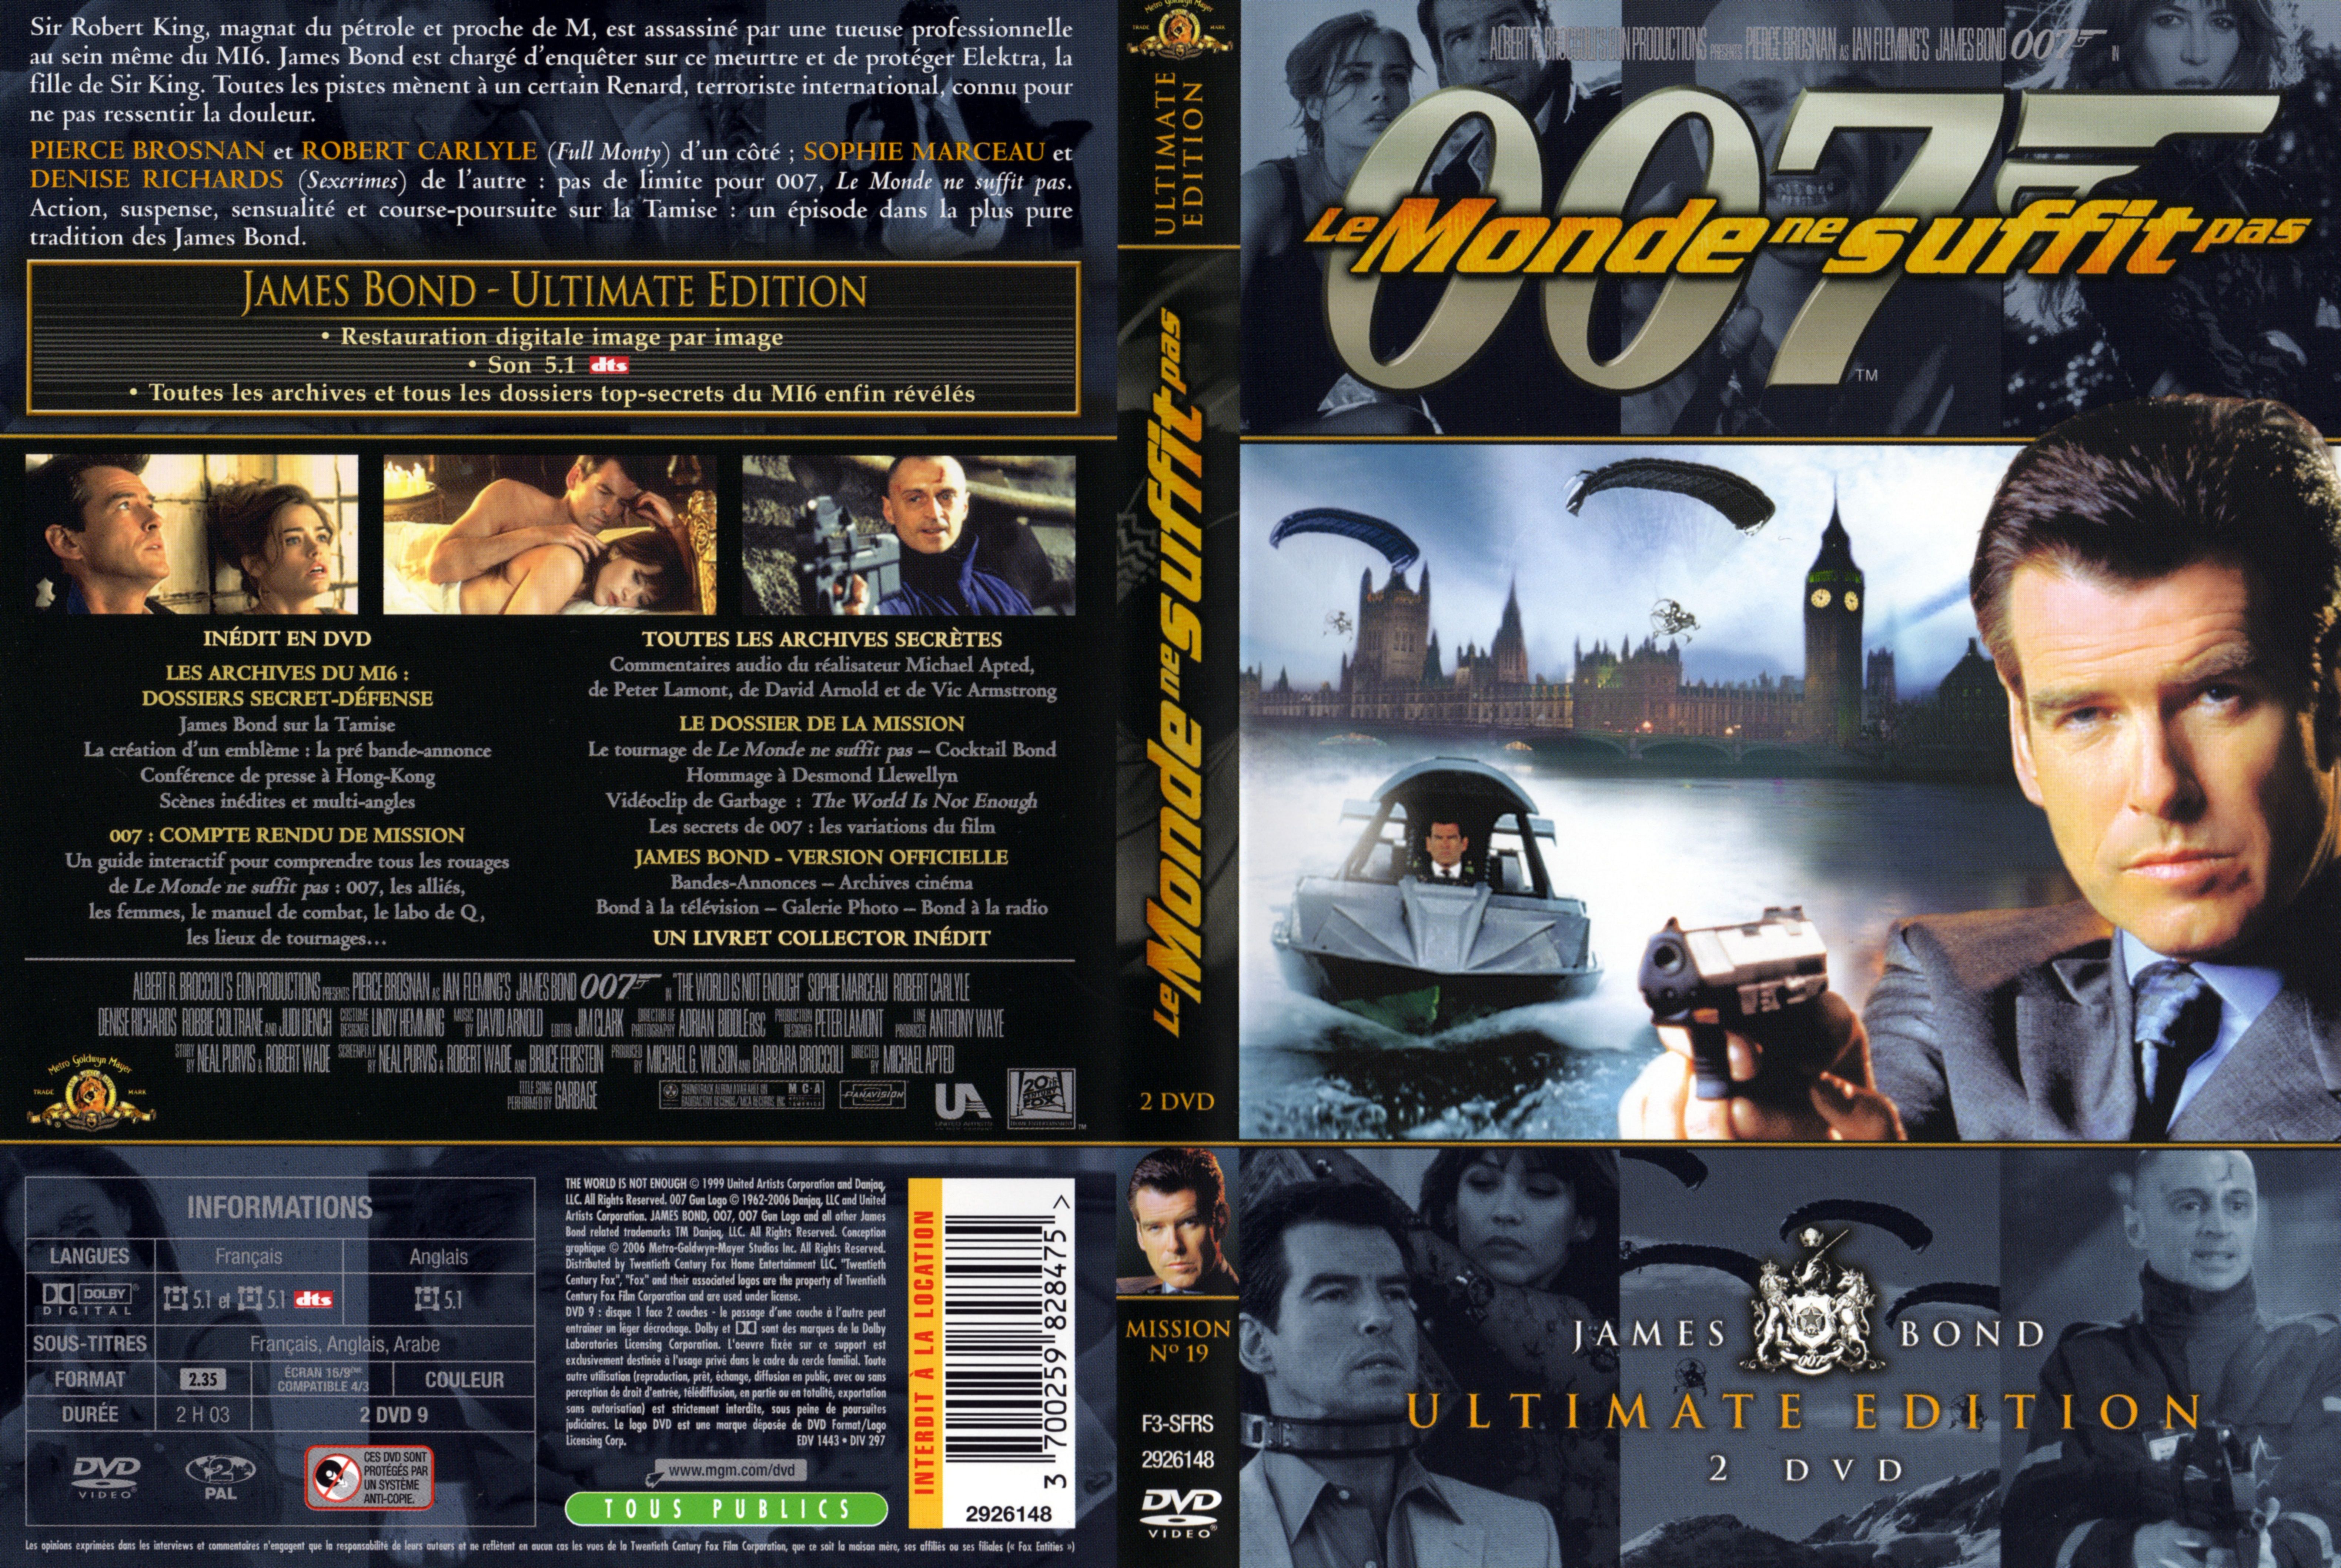 Jaquette DVD James bond 007 Le monde ne suffit pas Ultimate Edition